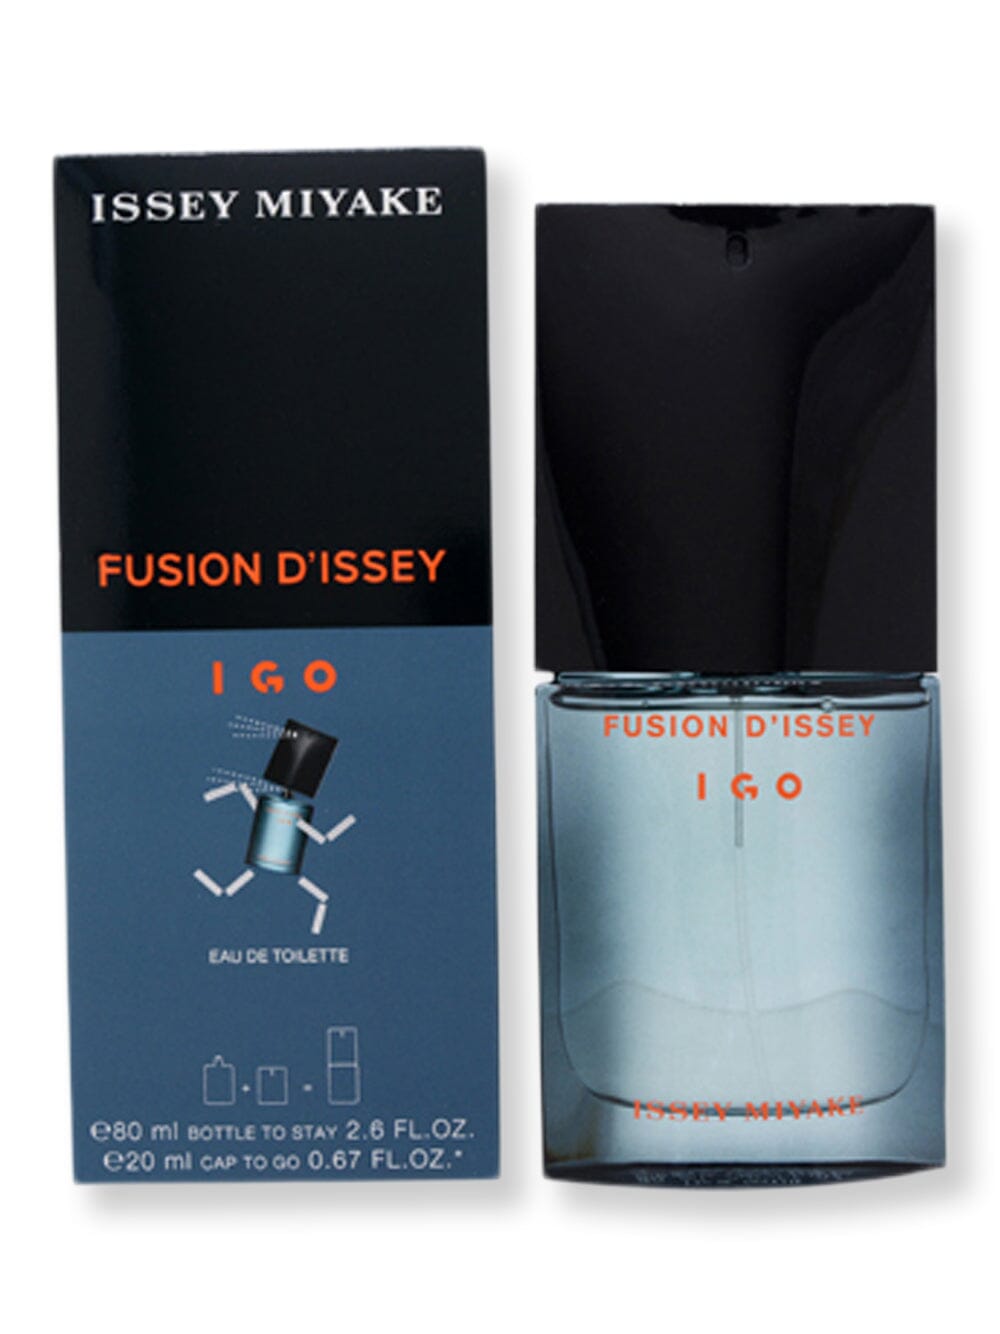 Issey Miyake Issey Miyake Fusion D'issey I Go EDT Spray + Cap To Go EDT Spray 2.6oz + .67oz Perfume 